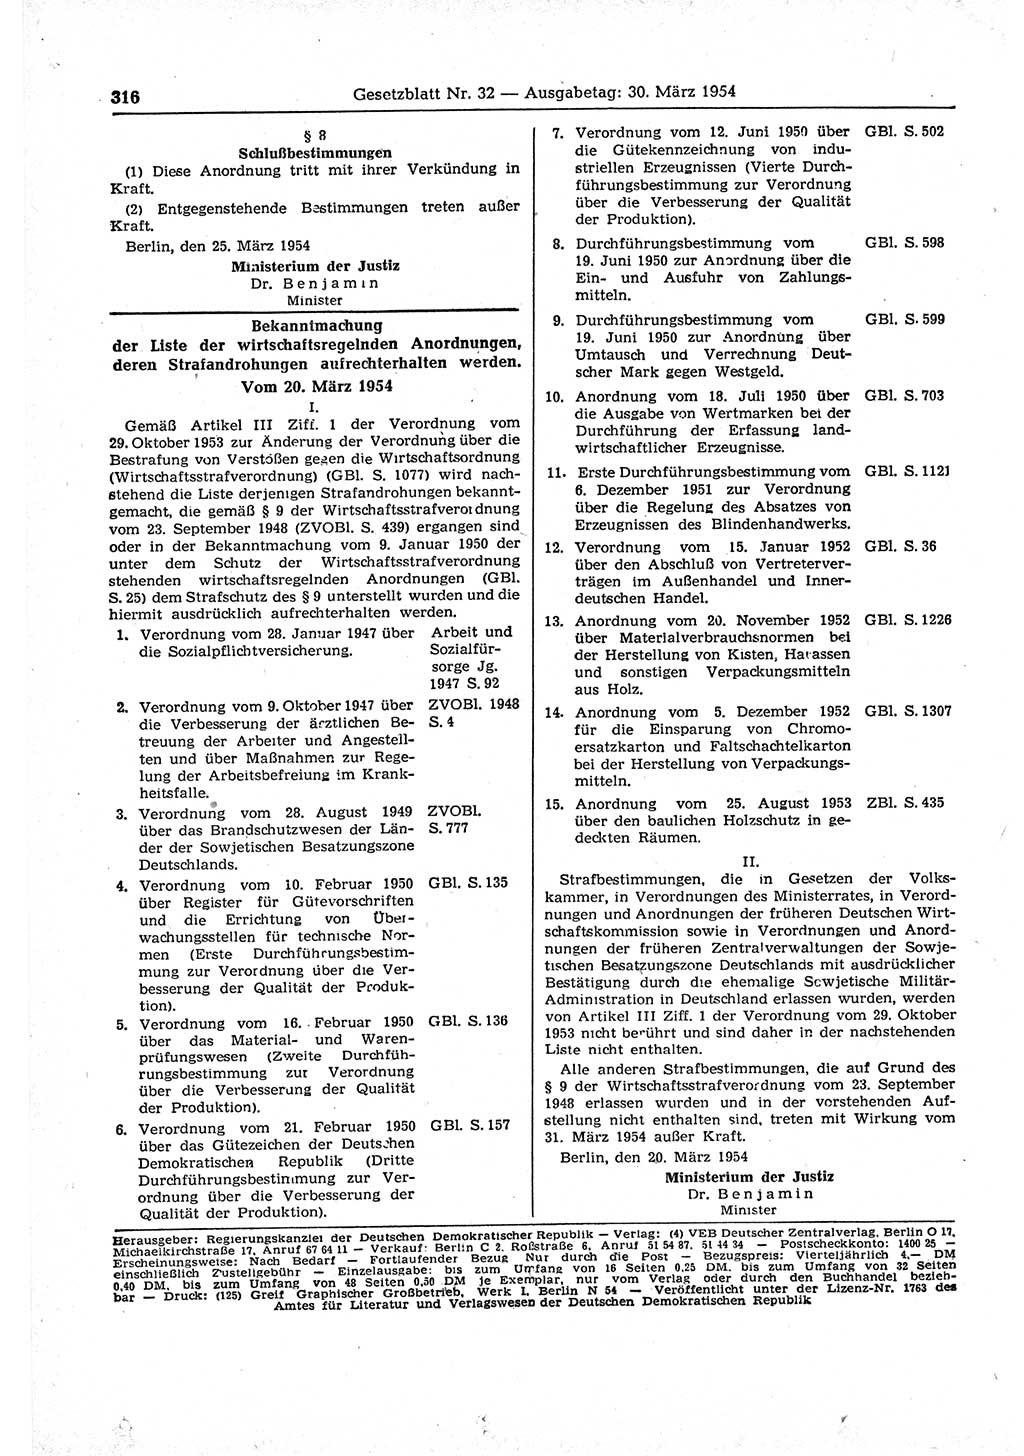 Gesetzblatt (GBl.) der Deutschen Demokratischen Republik (DDR) 1954, Seite 316 (GBl. DDR 1954, S. 316)